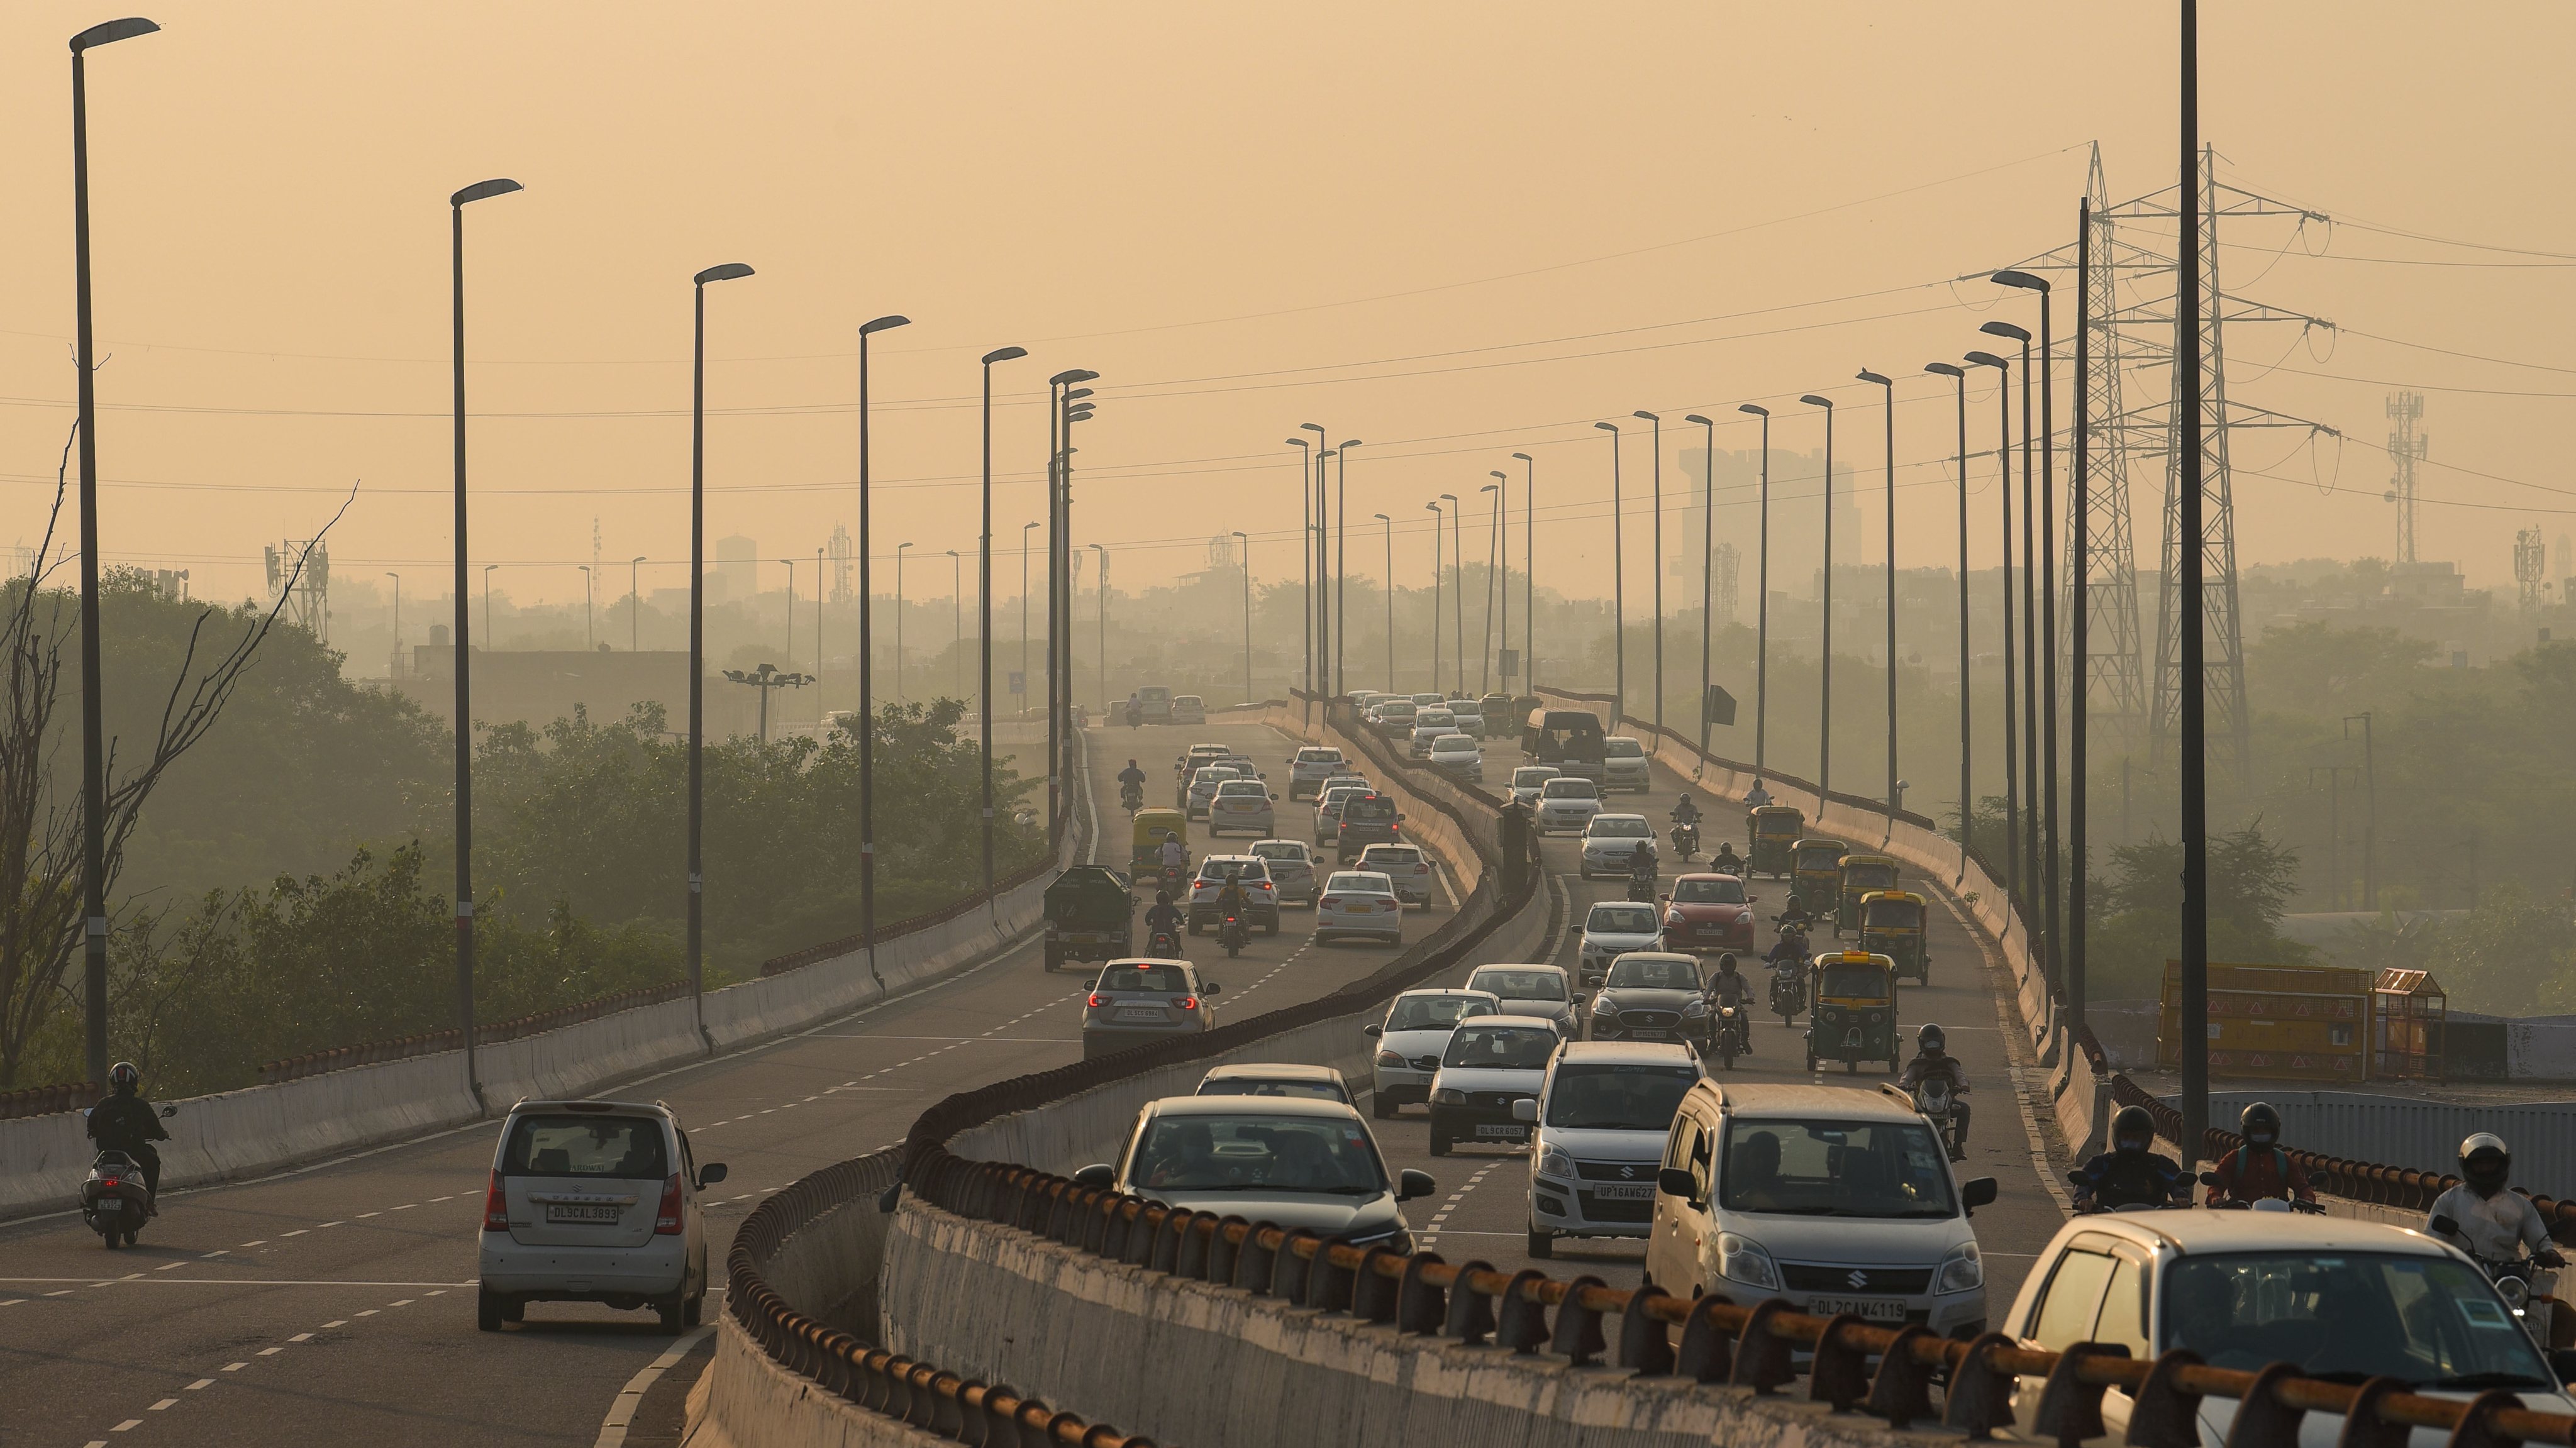 Poluição (smog) em Nova Deli